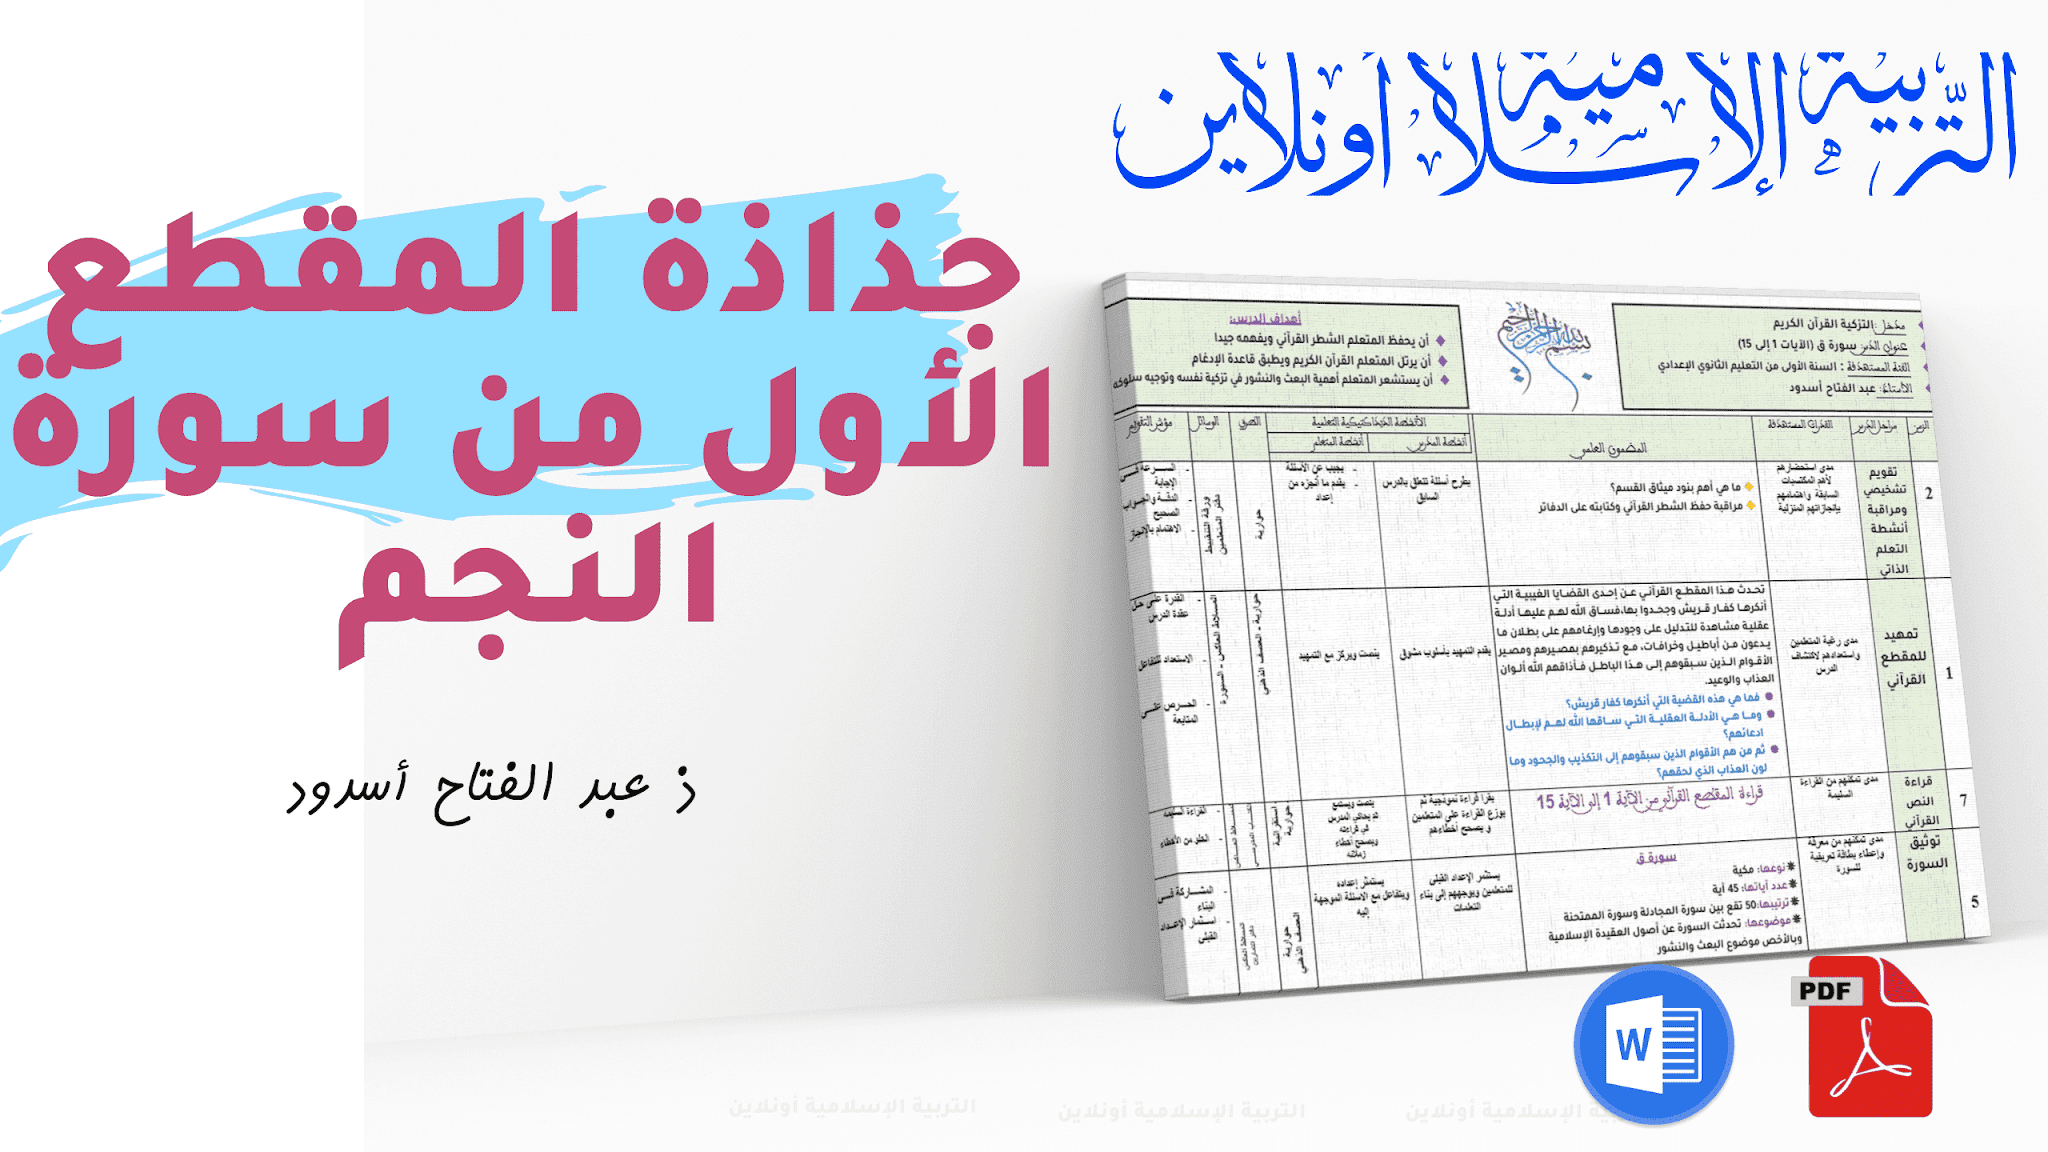 جذاذاة المقطع الاول من سورة النجم للثانية إعدادي pdf و word للتحميل